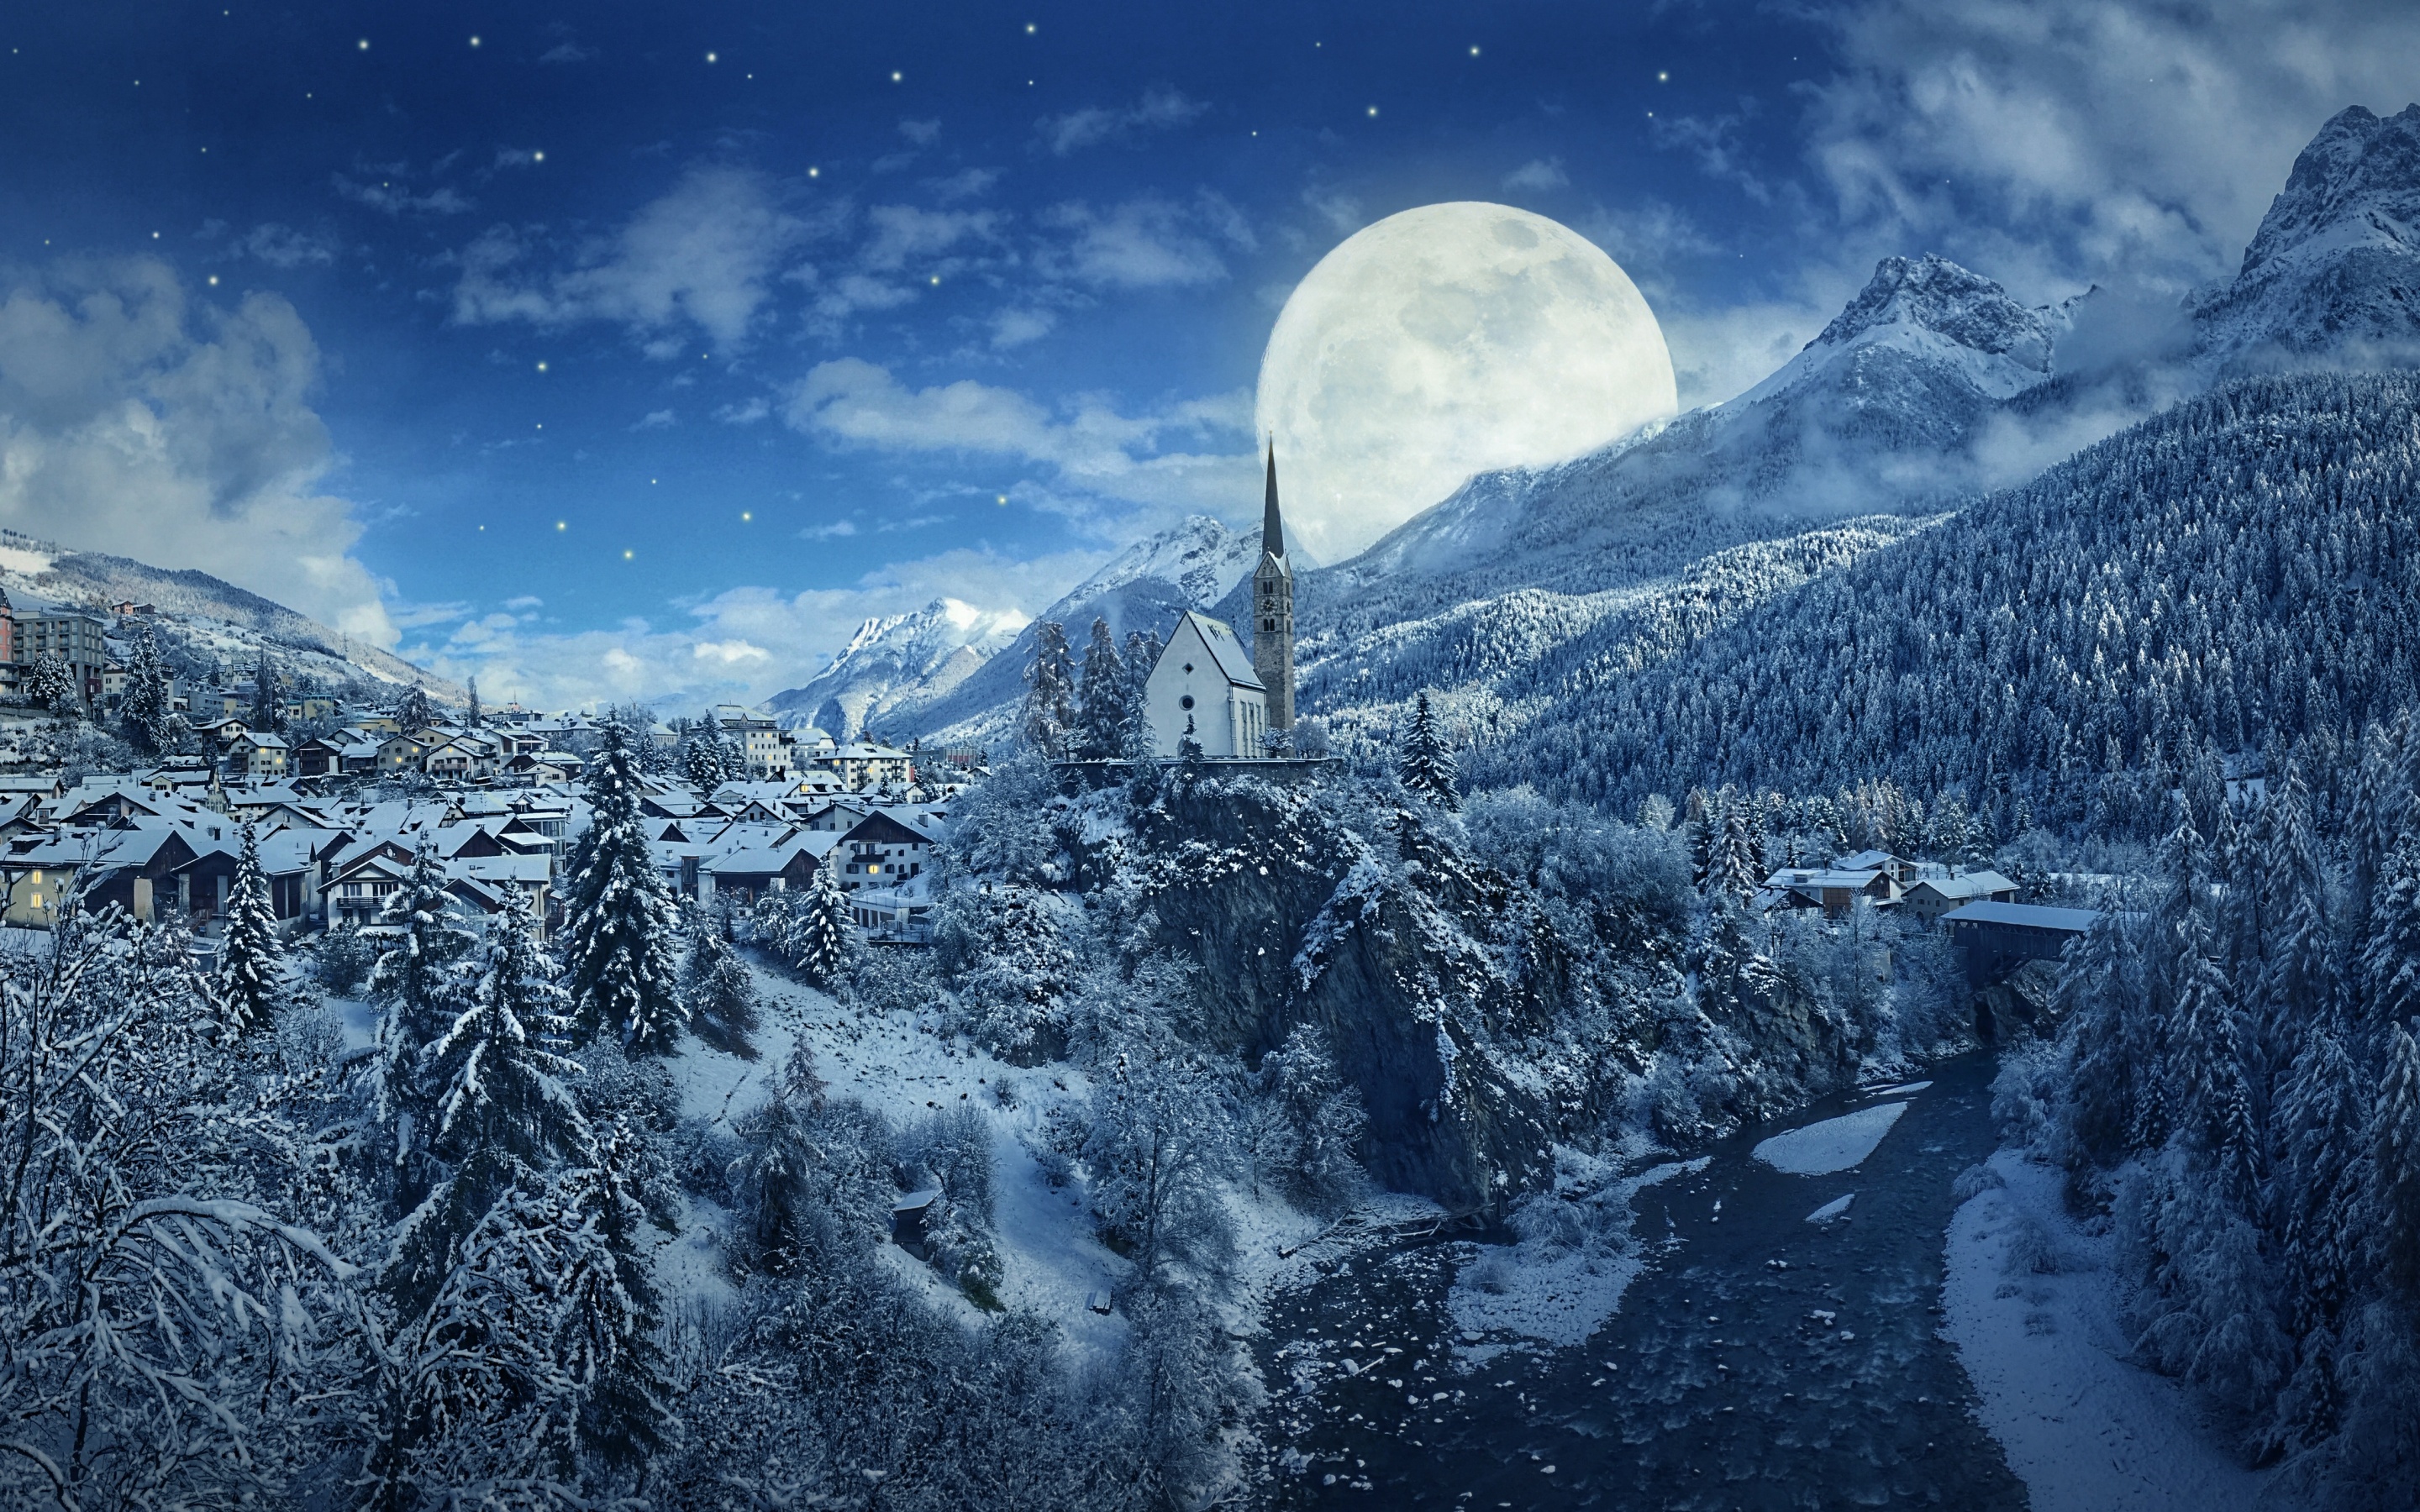 Hviske Skylight krig Winter Wallpaper 4K, Moon, Frozen, Forest, Village, Snowfall, 5K, Nature,  #924